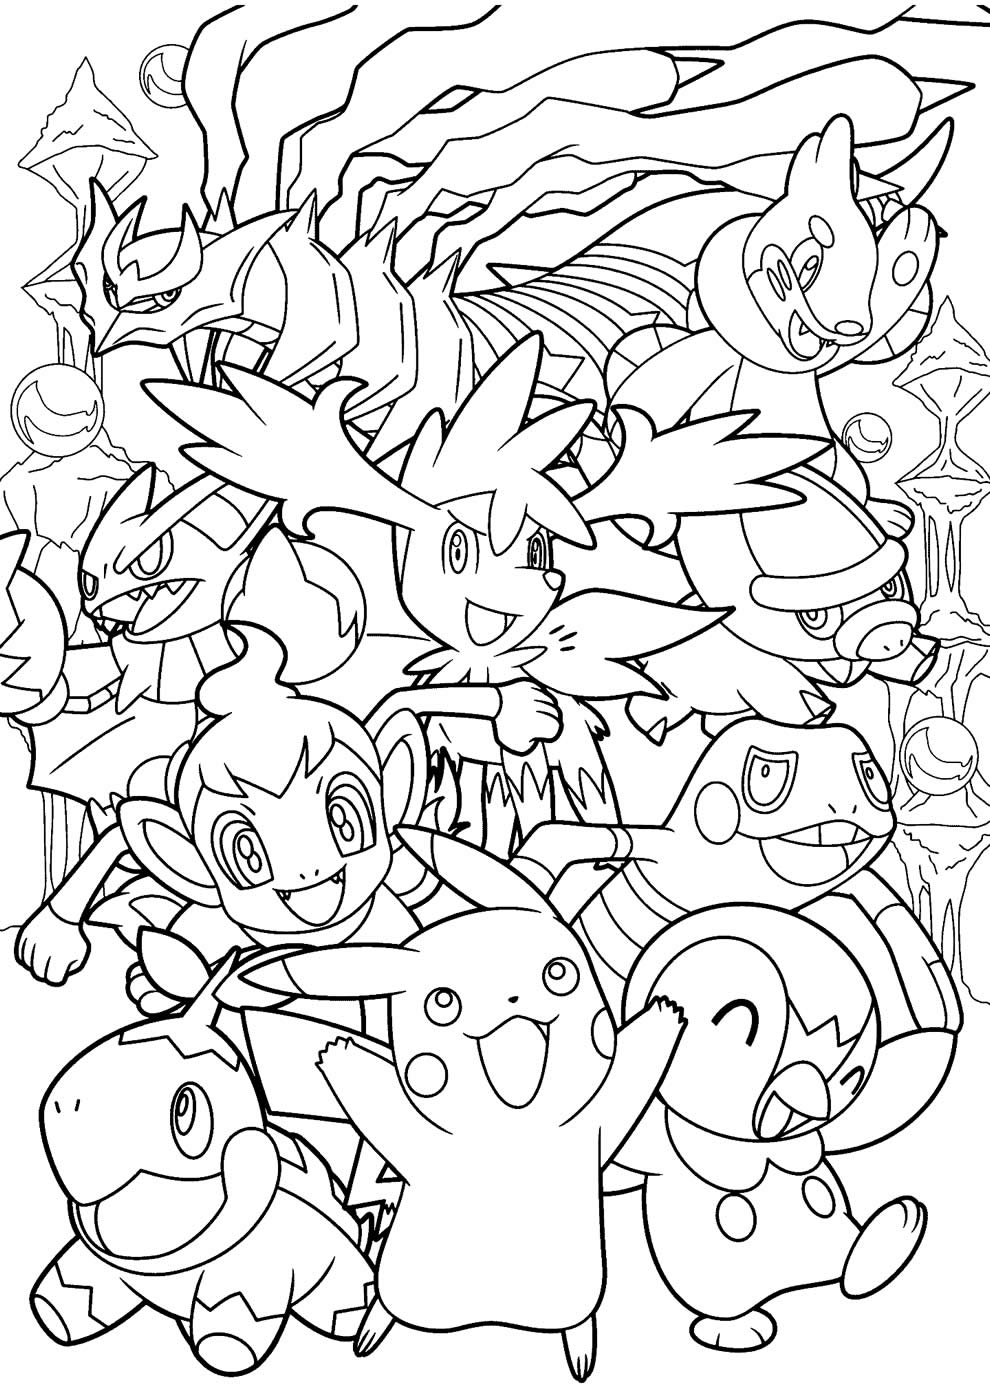 30 Desenhos do Pokemon para Colorir/Pintar!